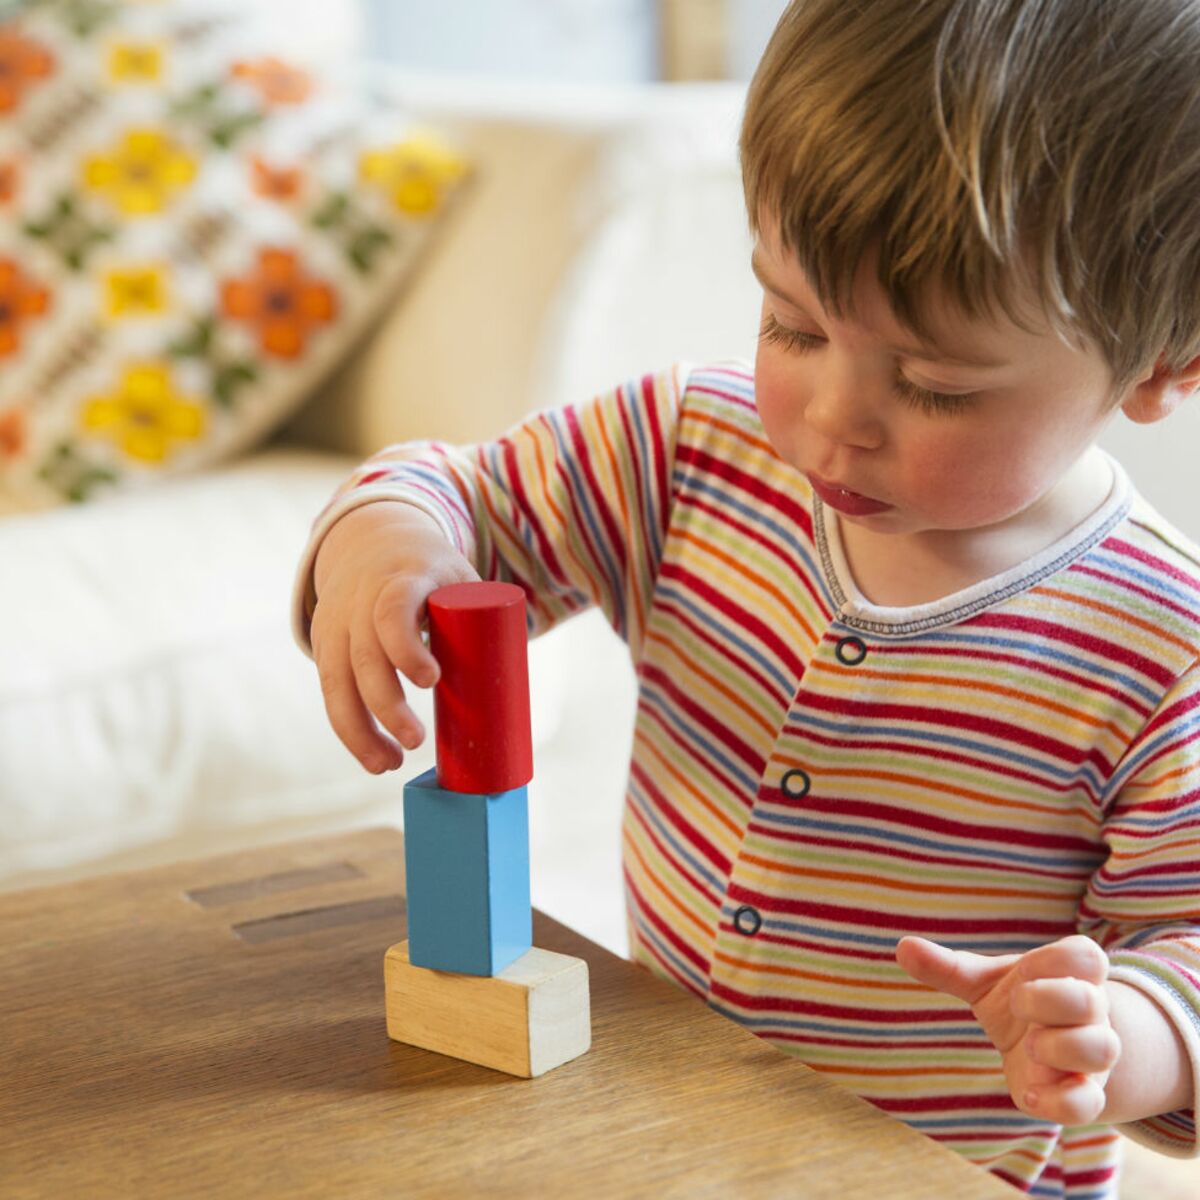 10 Jeux Inspires De La Pedagogie Montessori Pour S Amuser Avec Bebe Femme Actuelle Le Mag